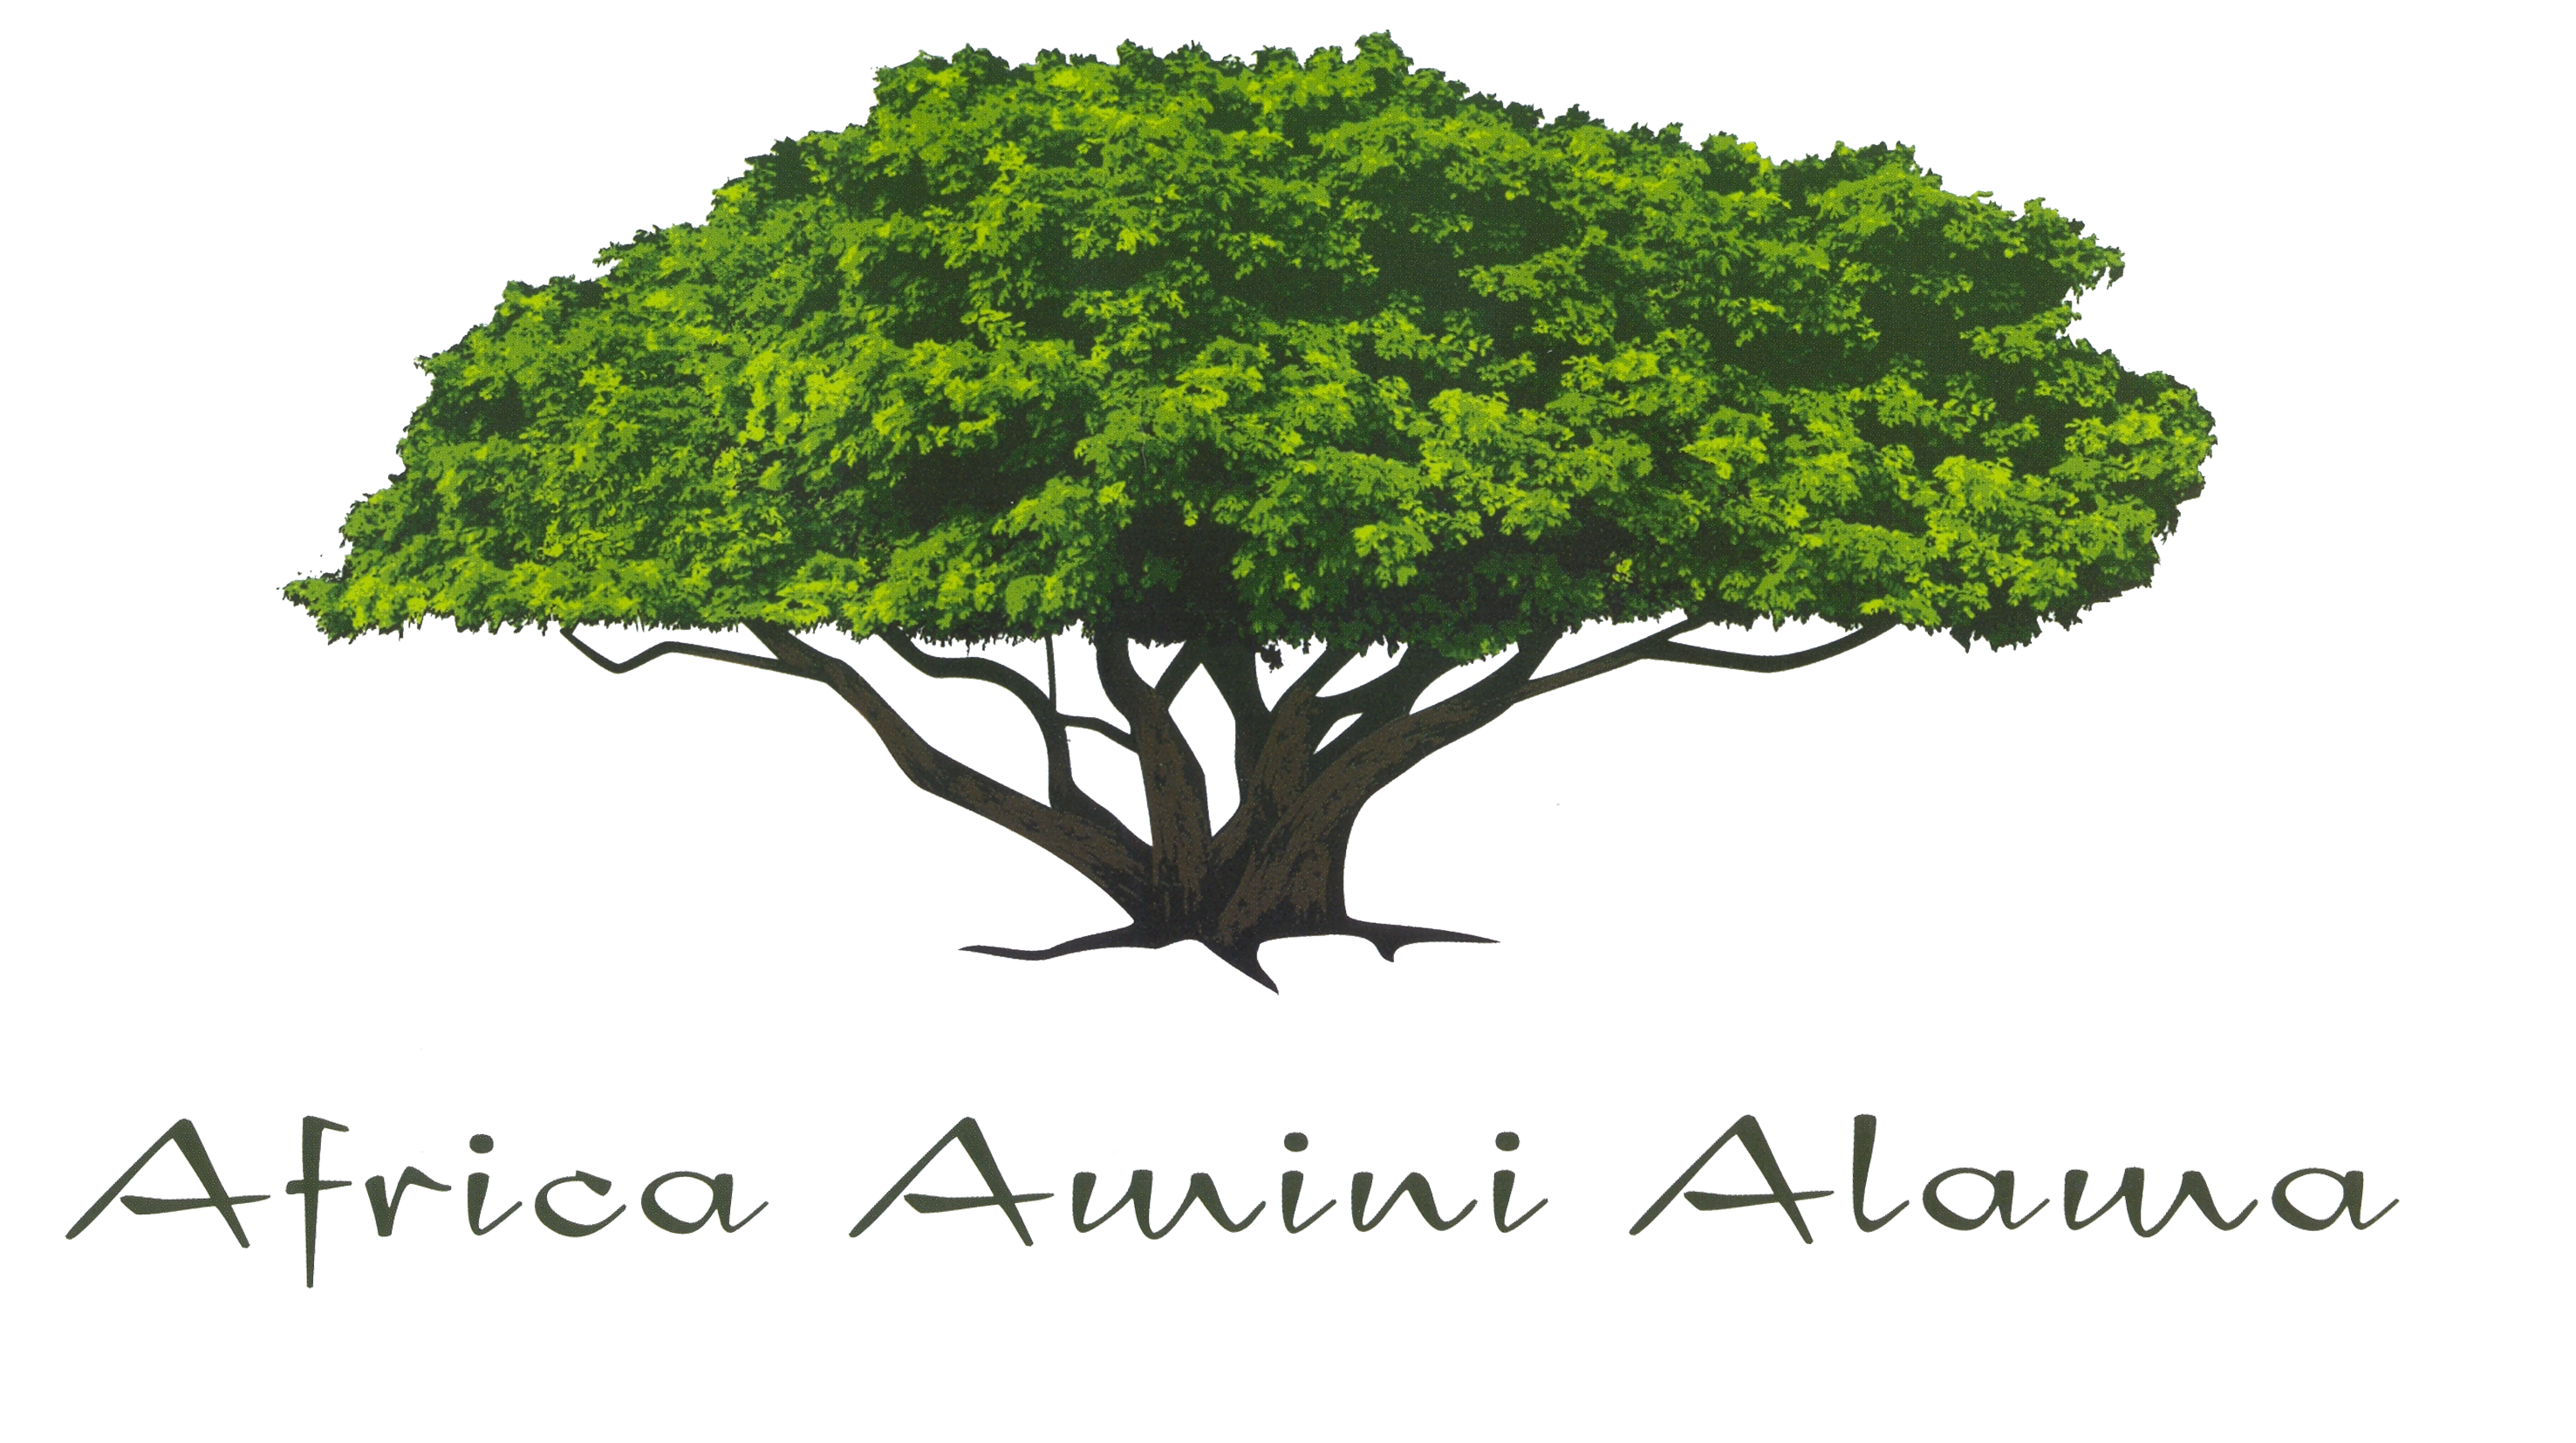 Africa Amini Alama Logo